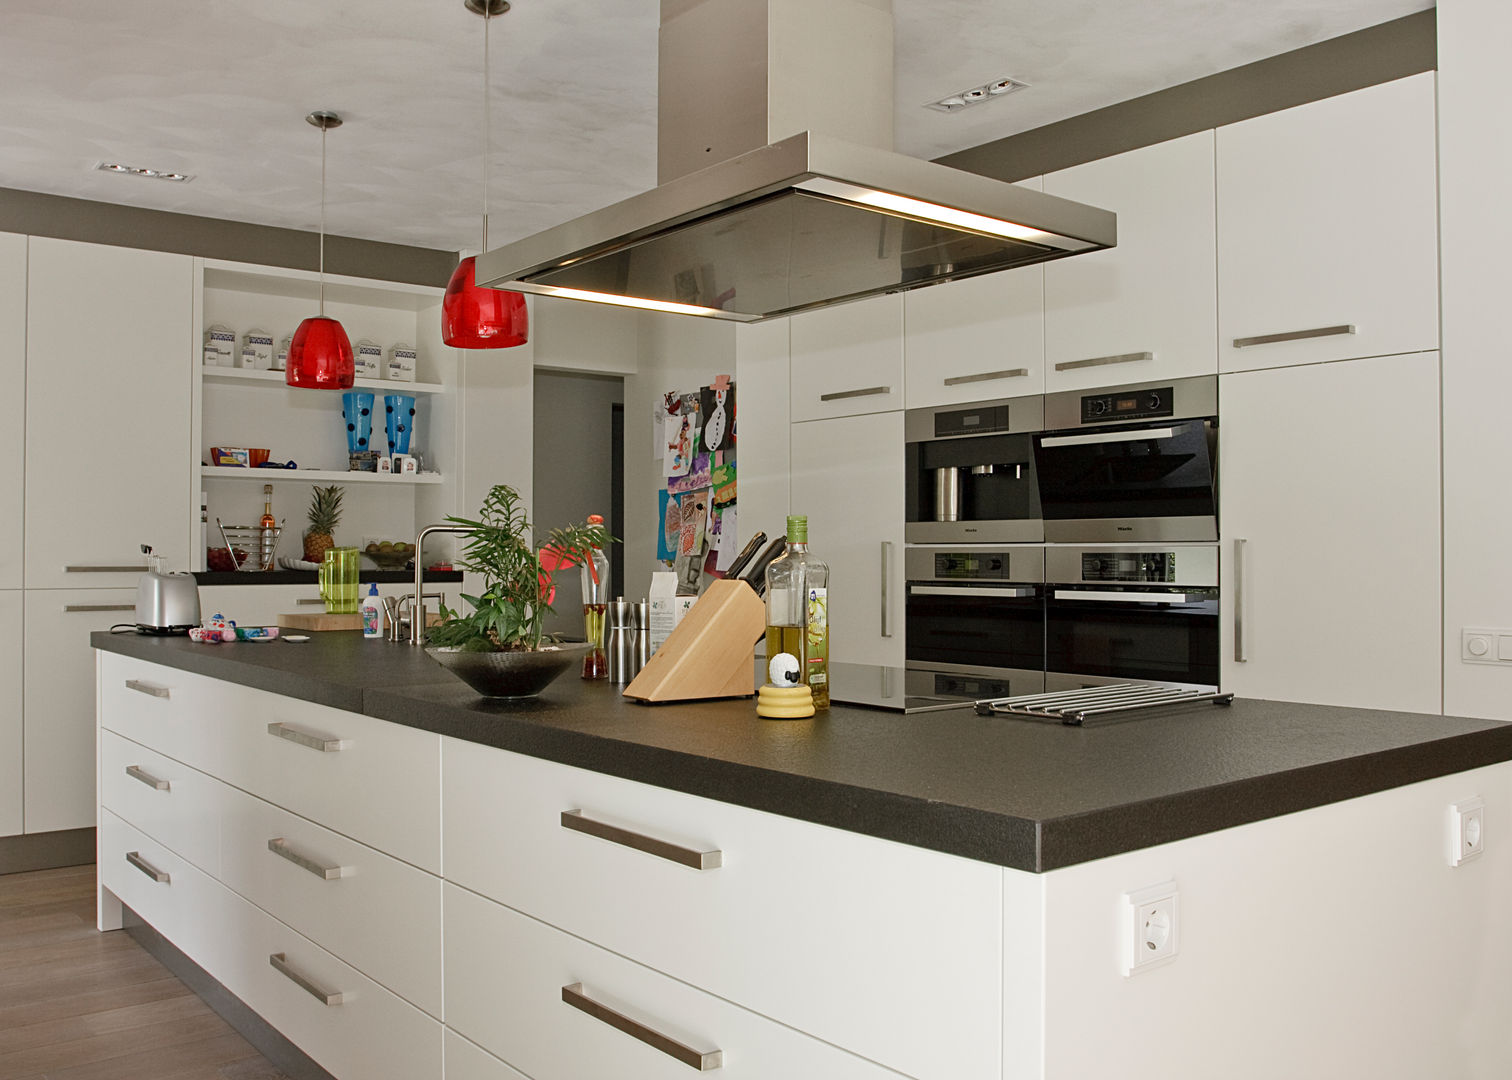 Open keuken, ruimte, licht - een keukeneiland biedt alle mogelijkhede, Thijs van de Wouw keuken- en interieurbouw Thijs van de Wouw keuken- en interieurbouw Cocinas de estilo moderno